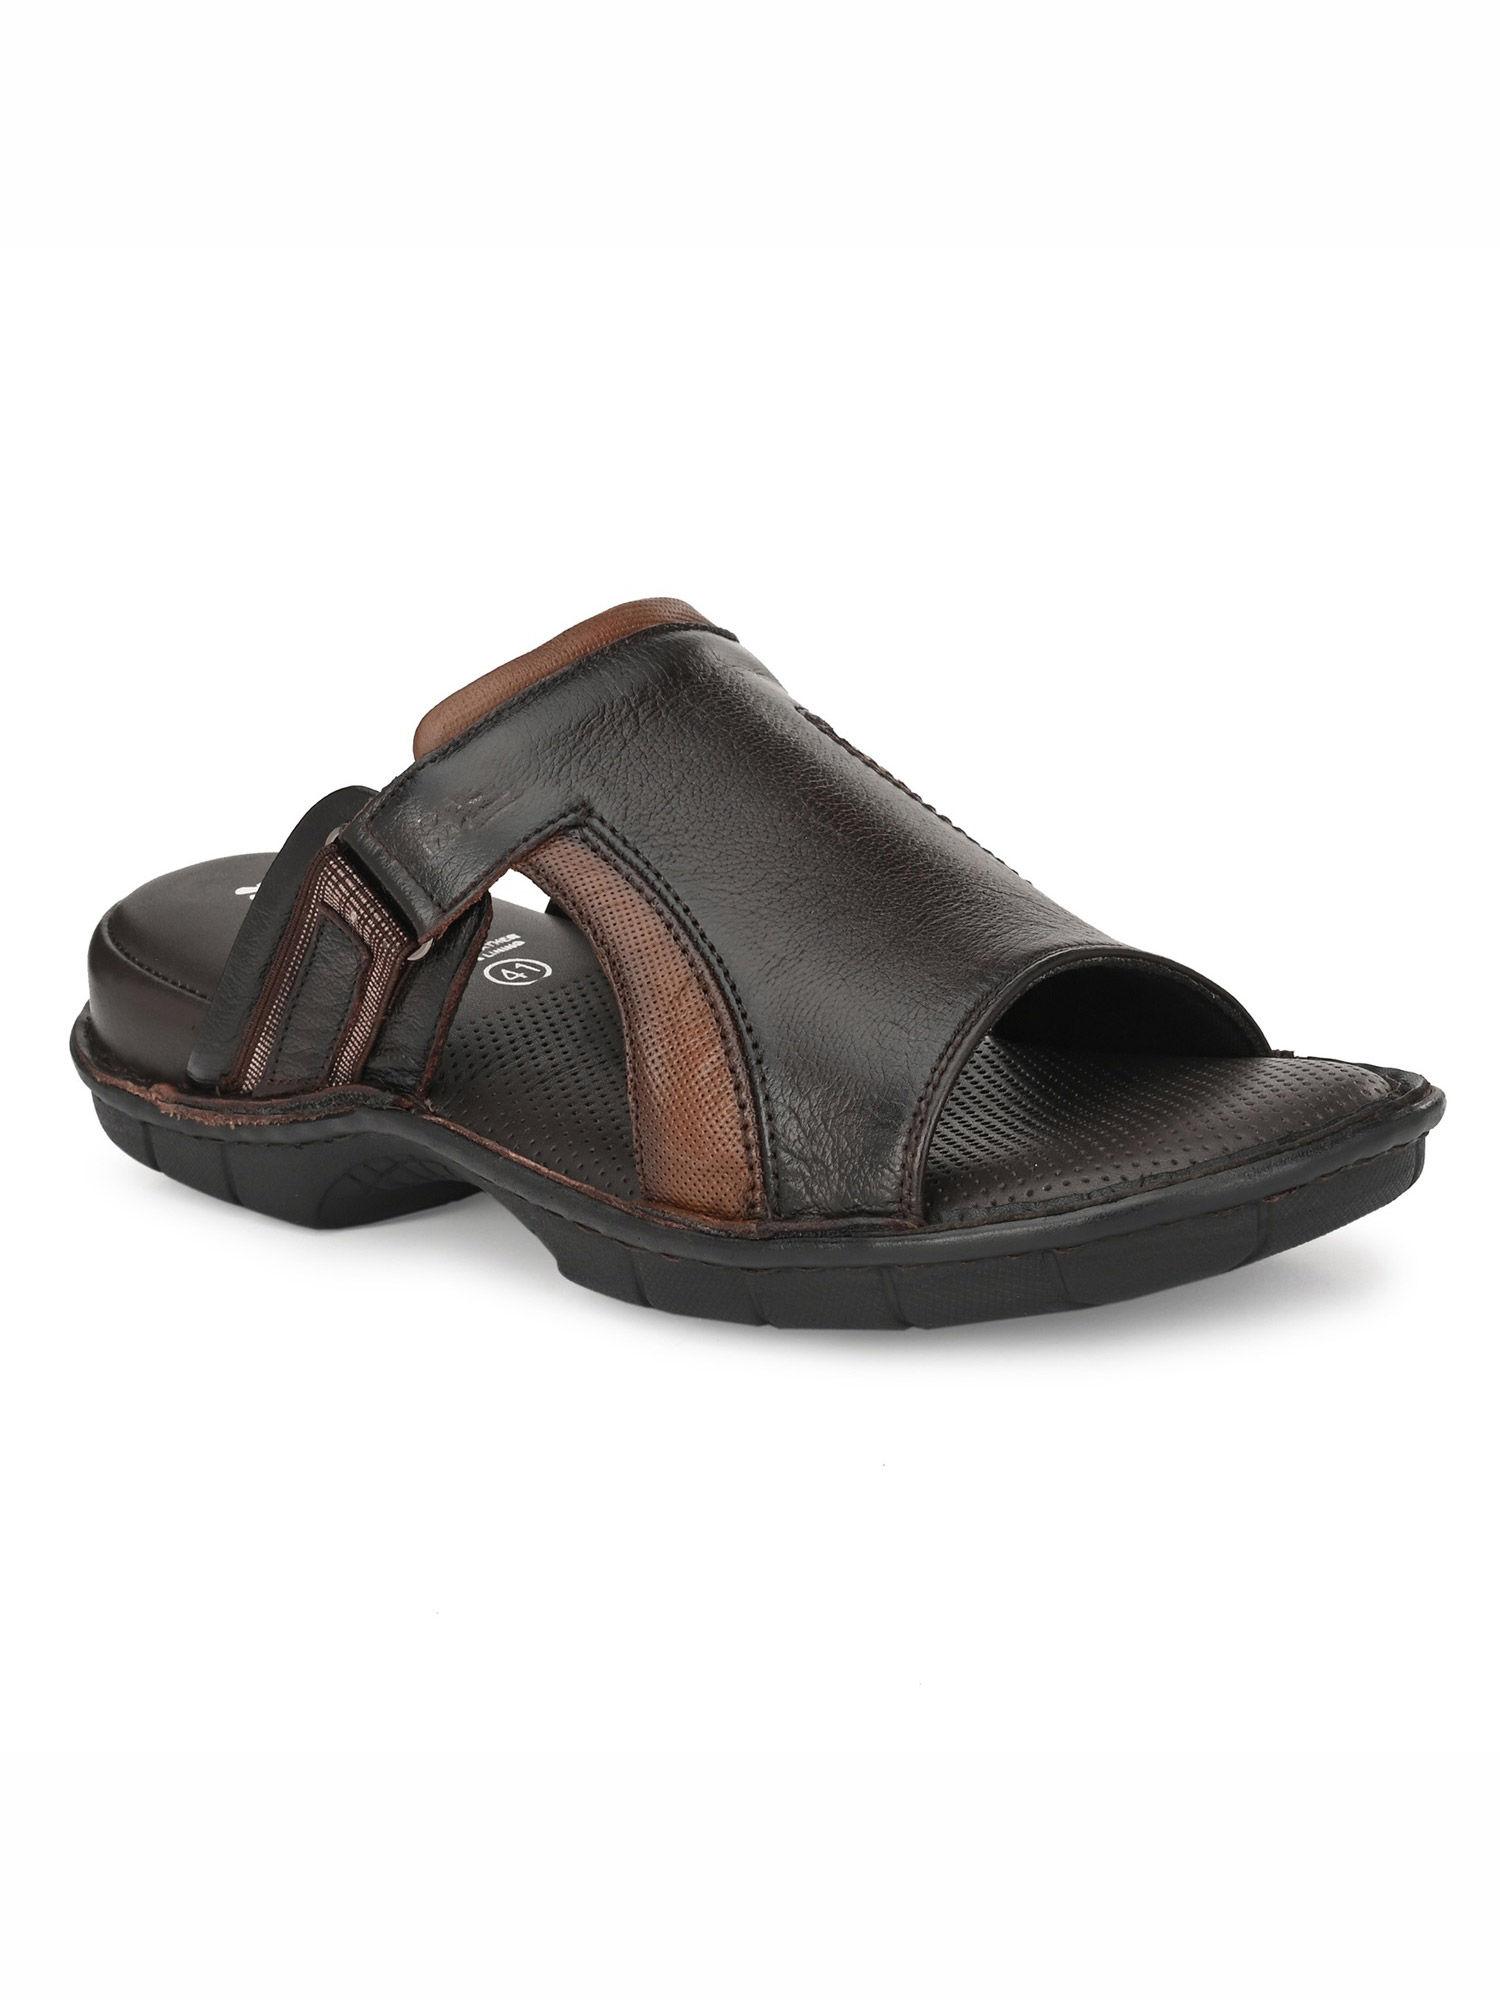 men's brown leather open toe comfort slippers